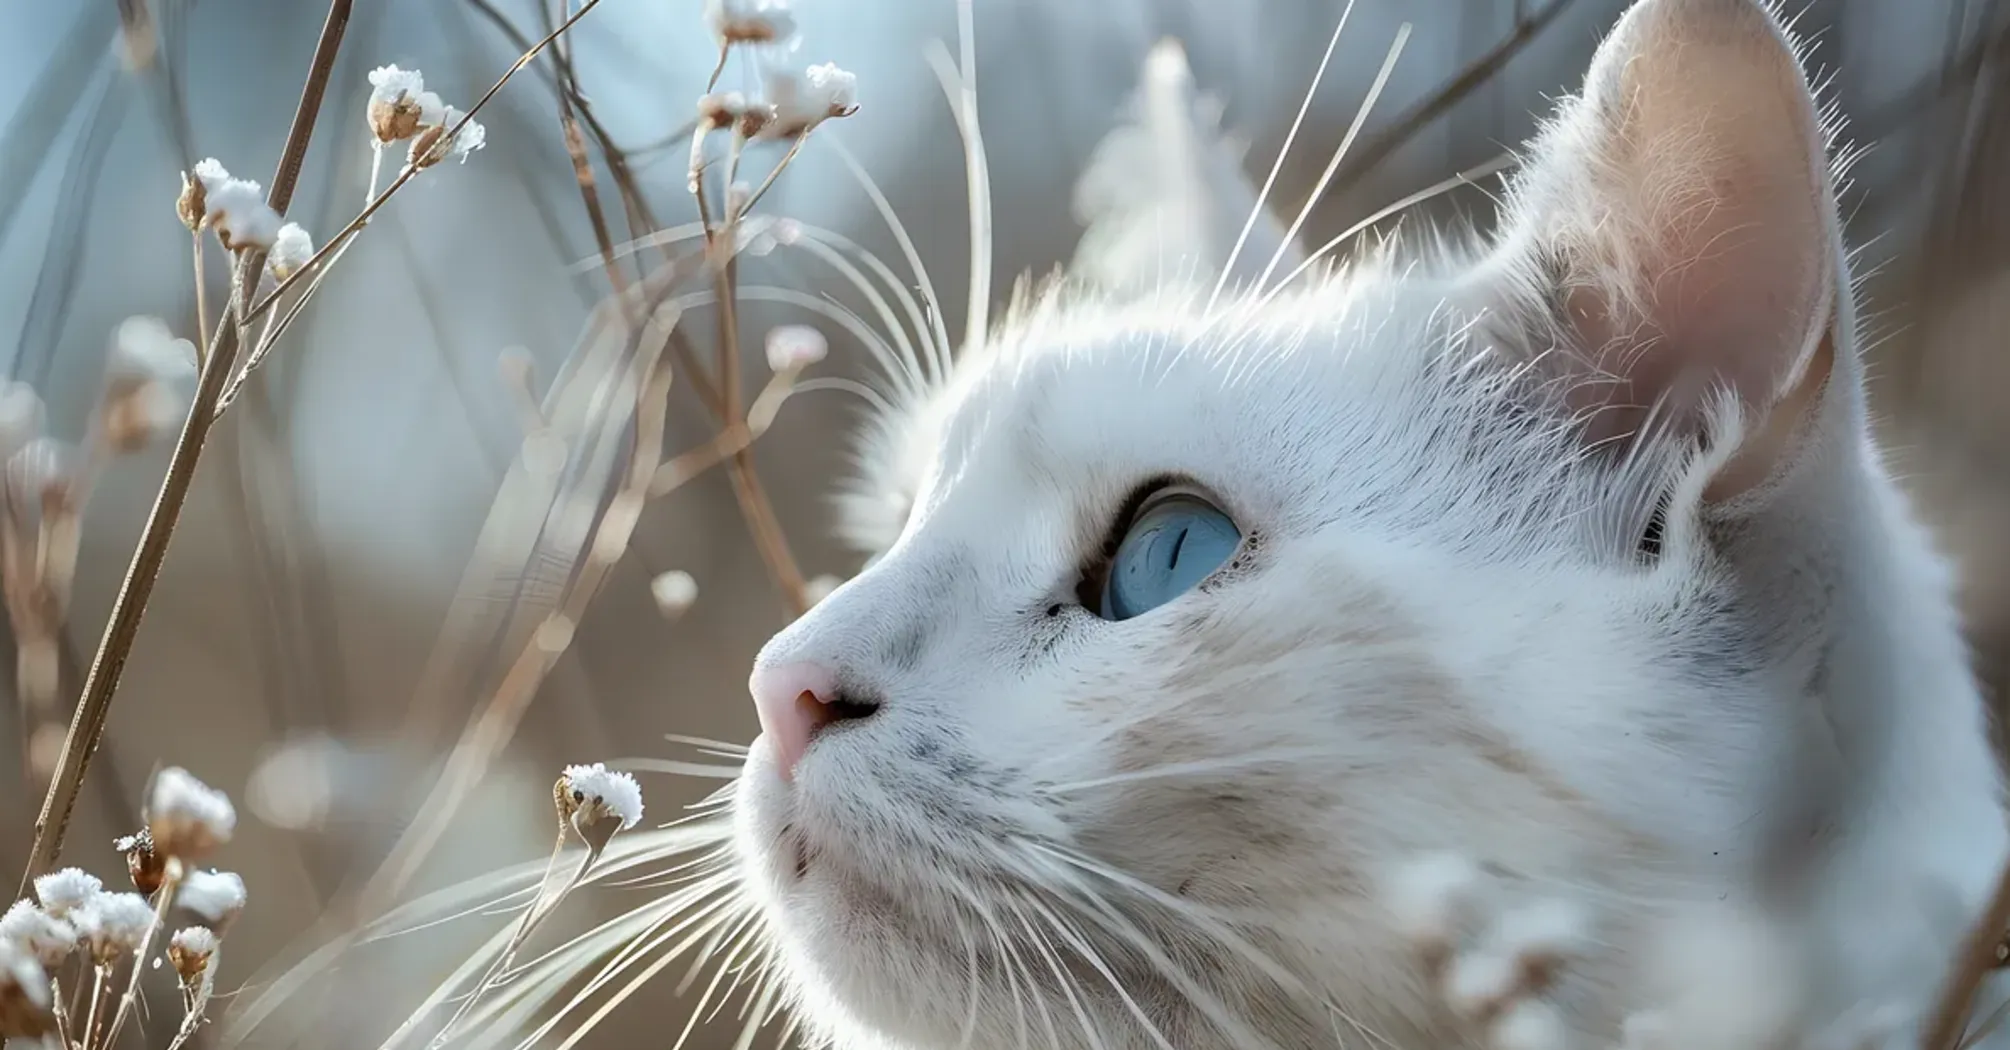 Милые создания: эксперты назвали 3 самые красивые породы кошек (фото)